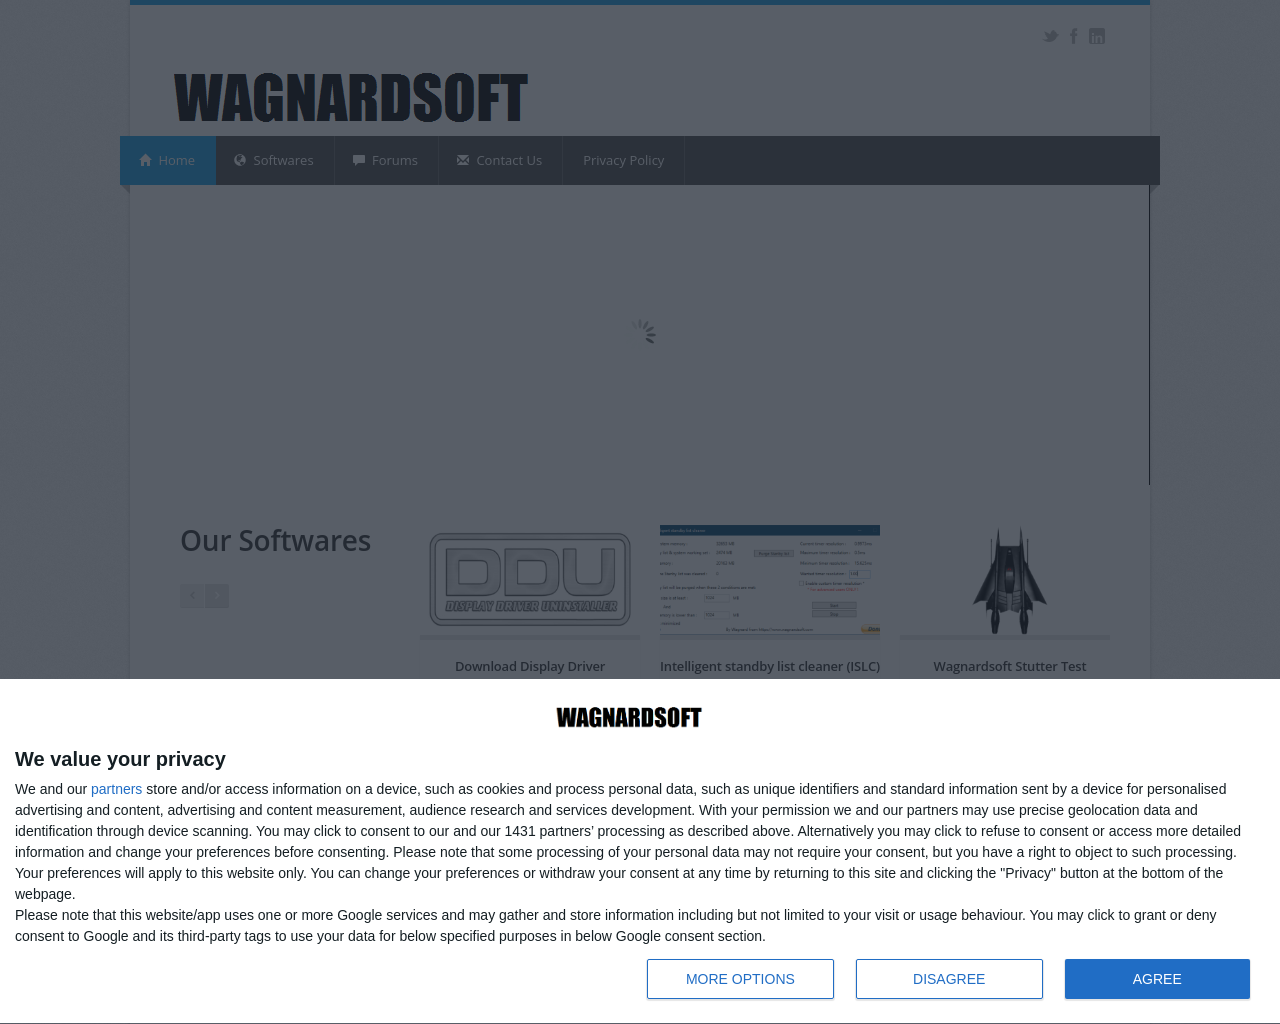 wagnardsoft.com